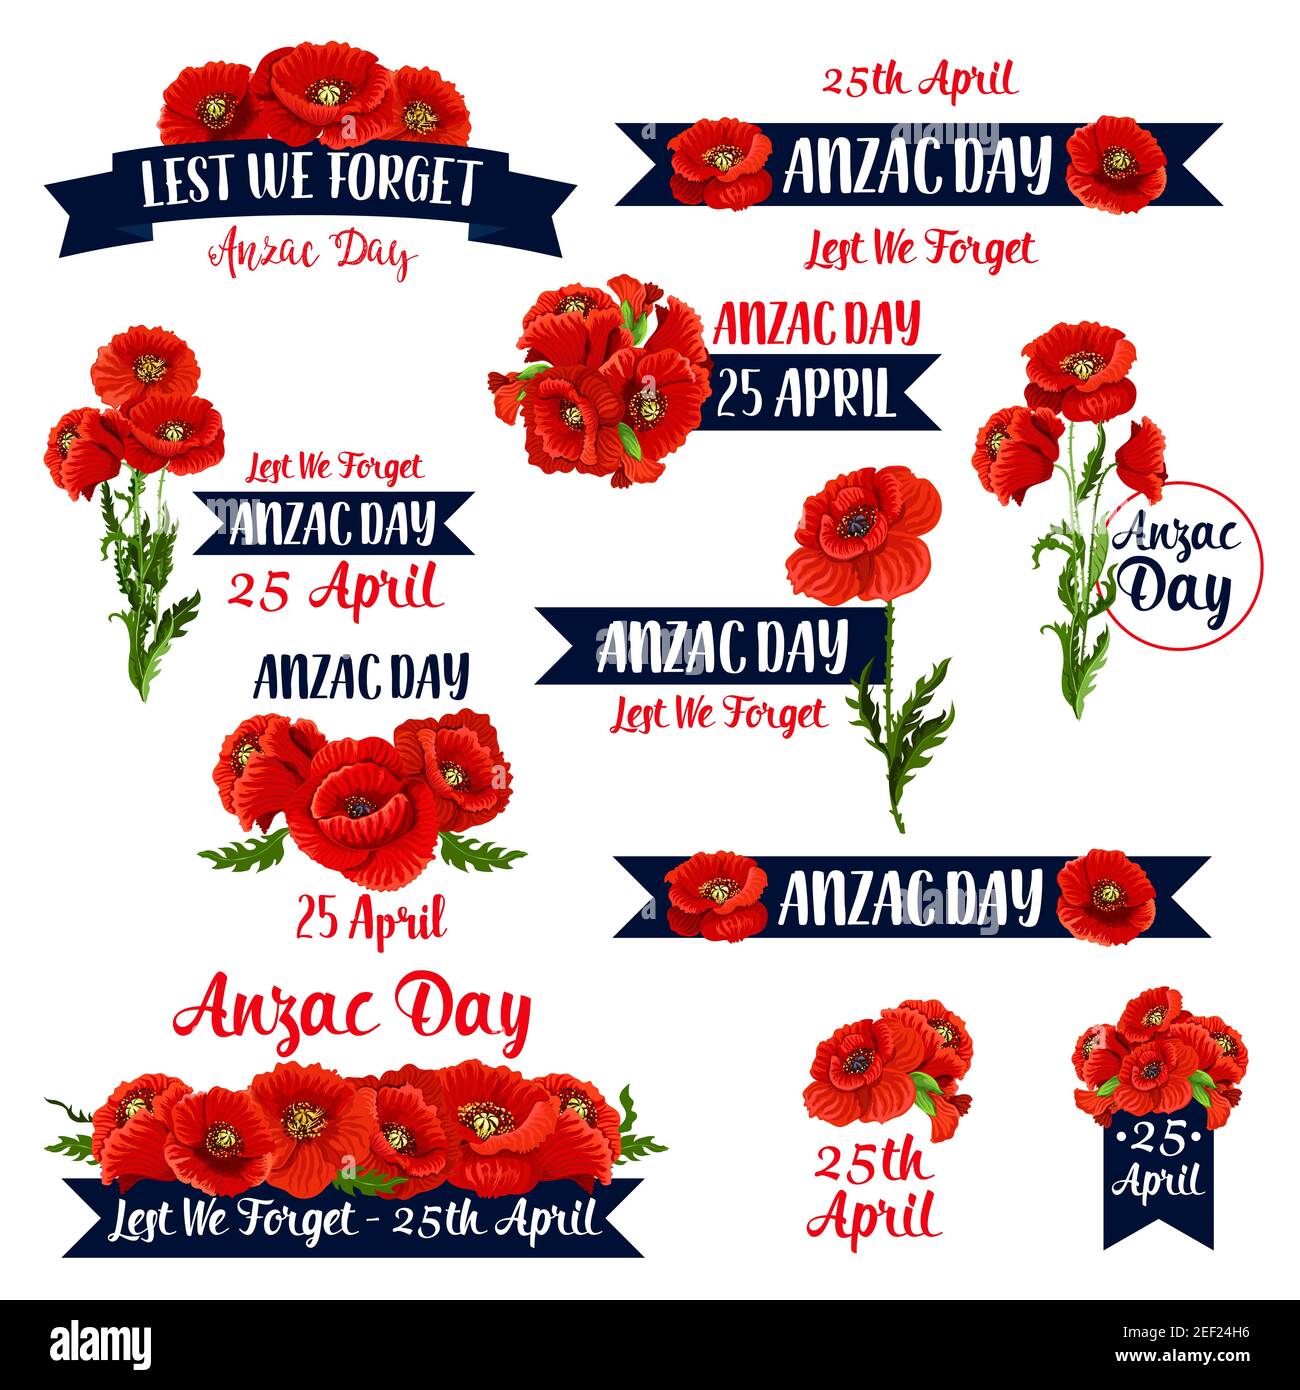 Anzac Day Gedenktag Symbole für 25 April der australischen und neuseeländischen Kriegsdenkzeit. Vektor-Set von roten Mohnblumen und Lest We Forge Stock Vektor